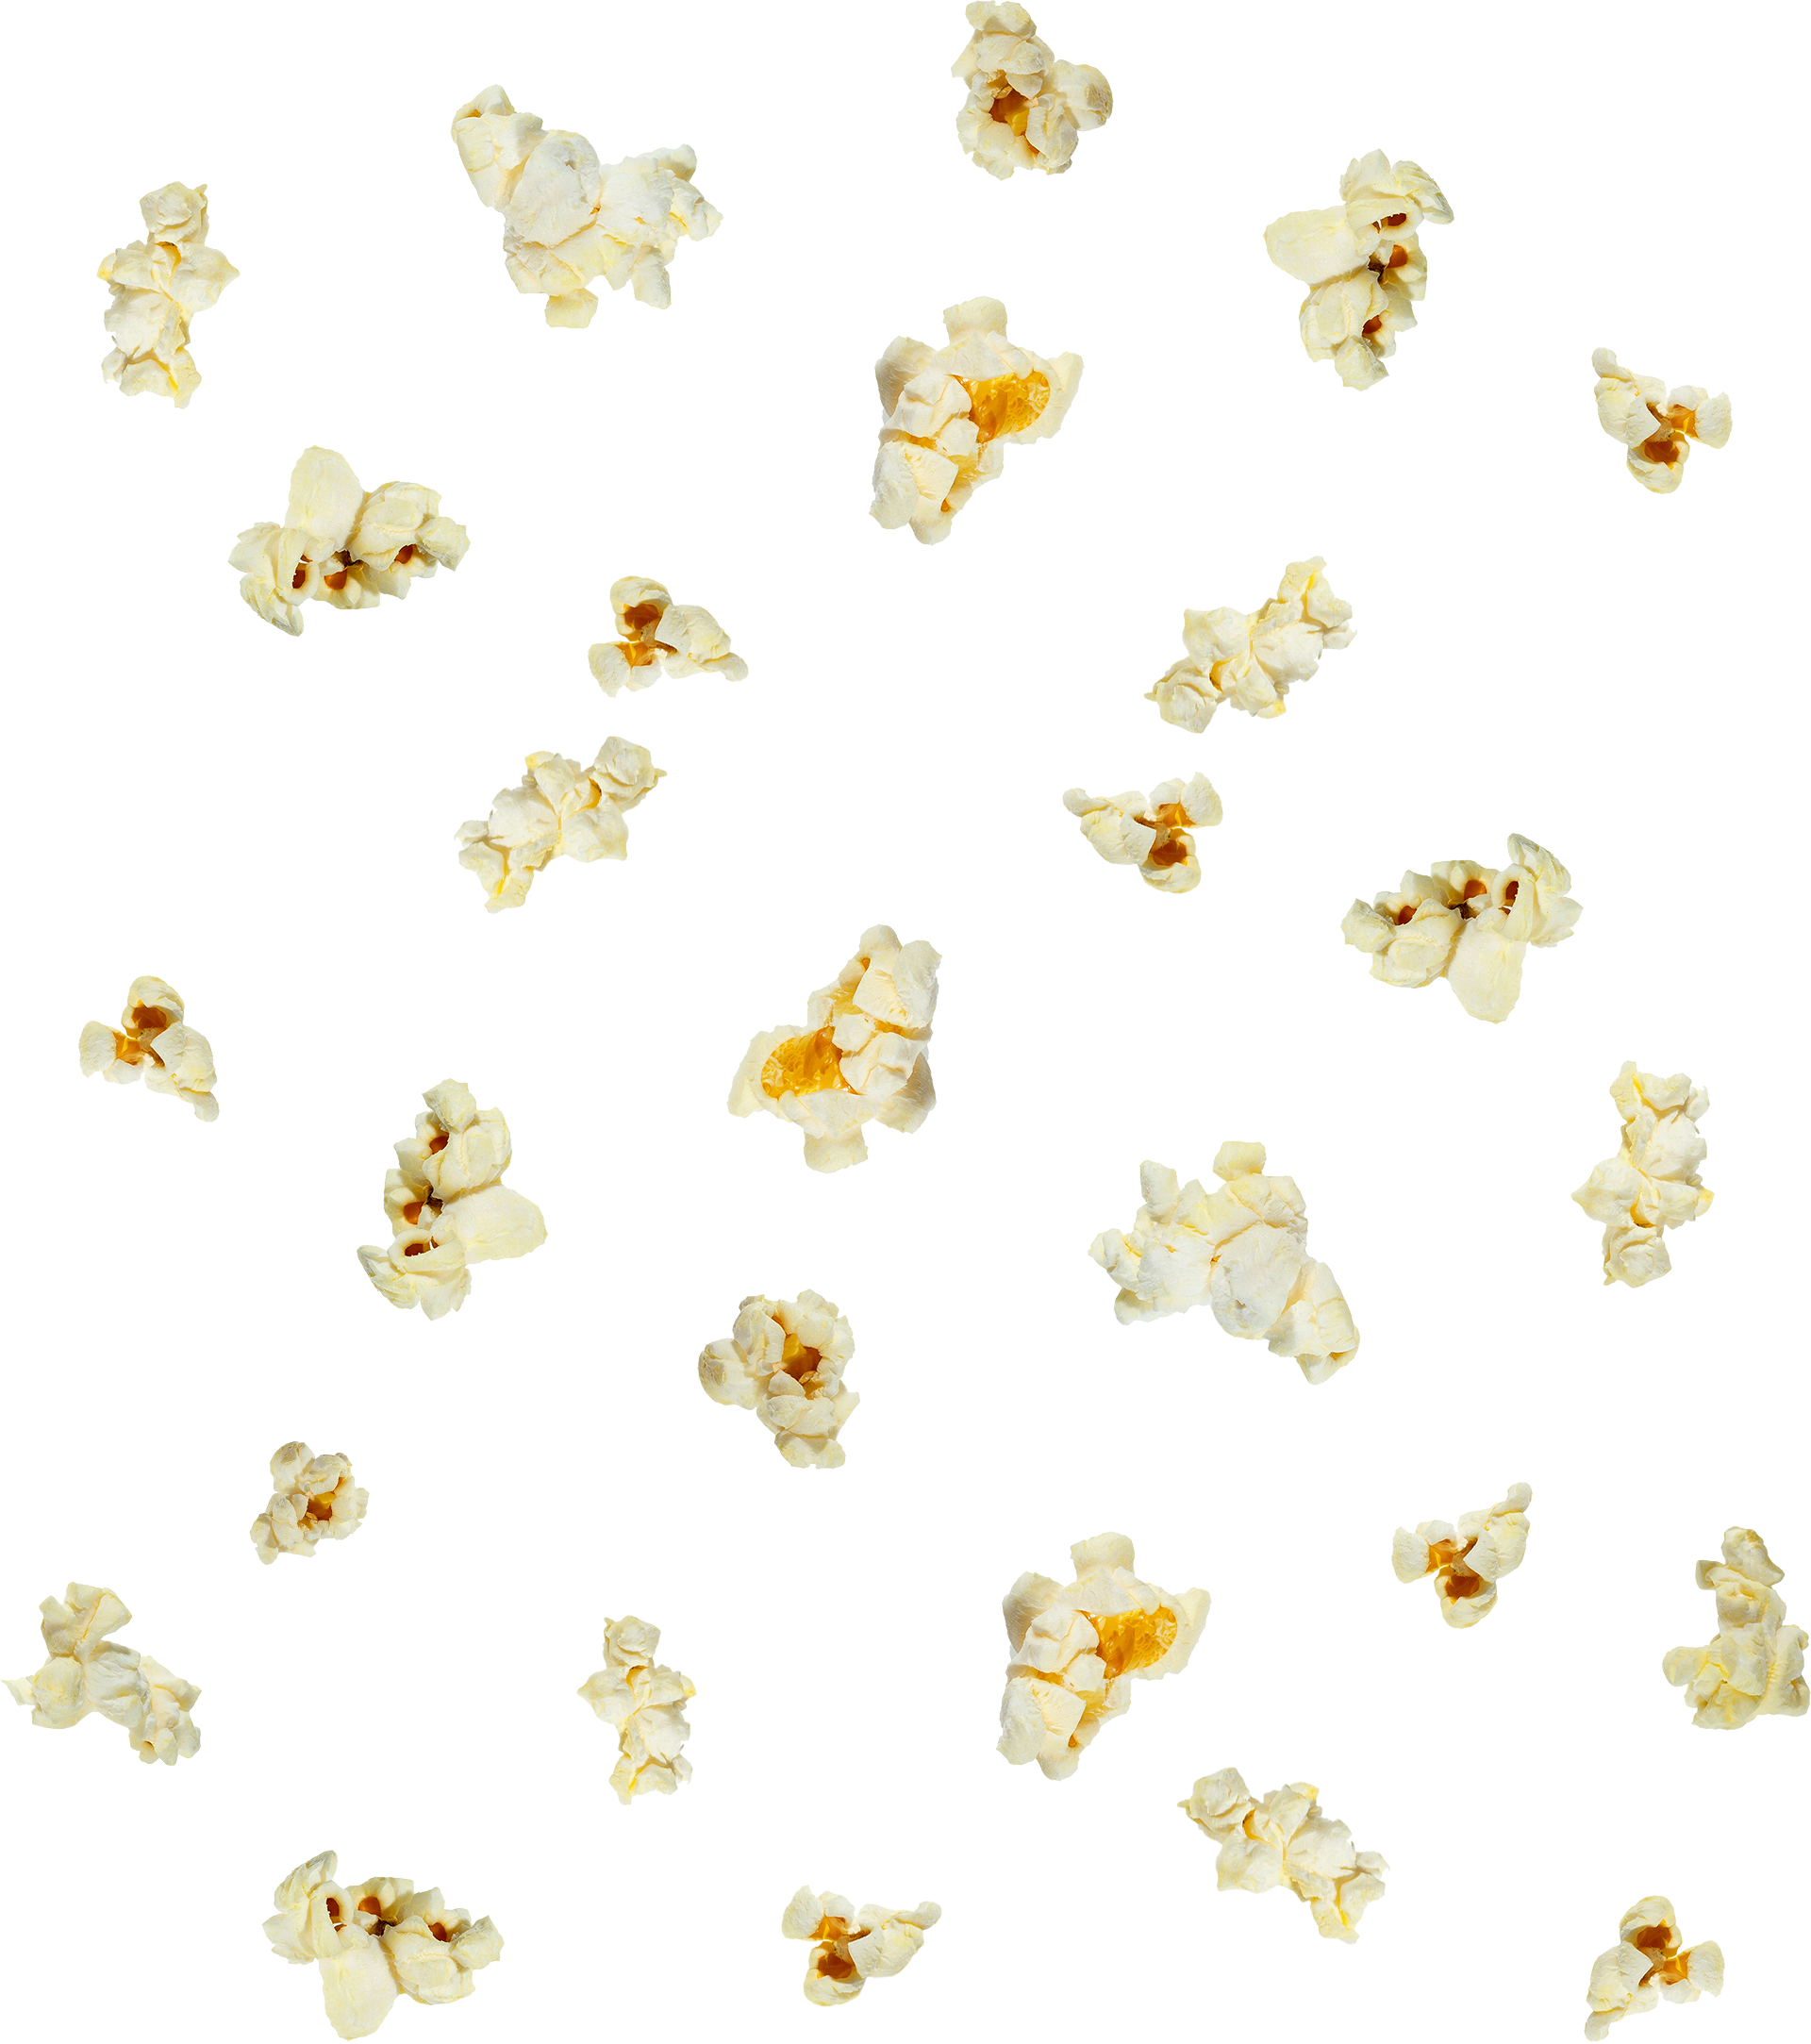 flying popcorn kernels